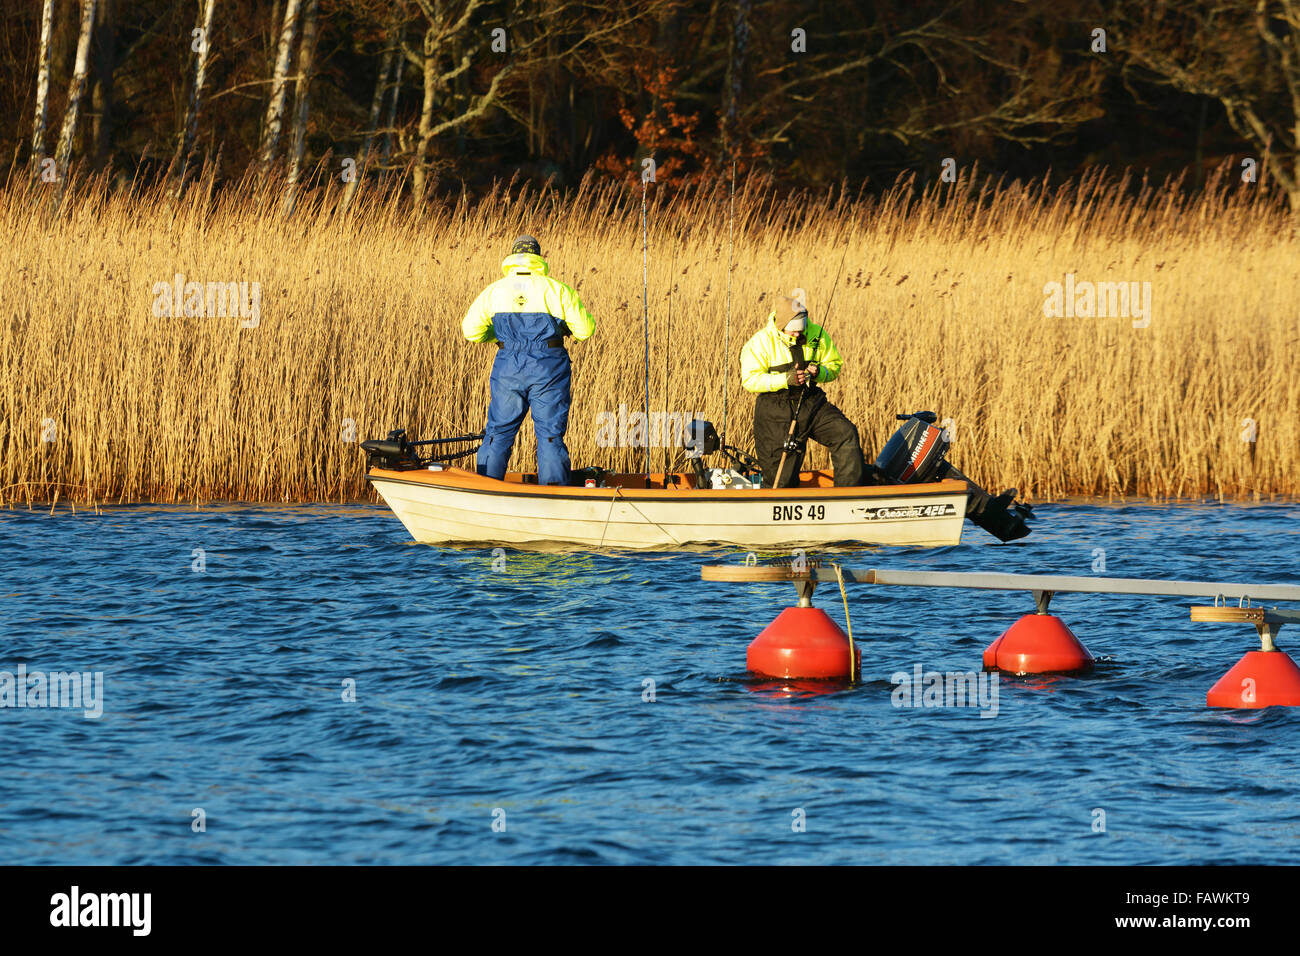 Ronneby, Suecia - 30 de diciembre de 2015: Dos personas que pescaban en un pequeño bote abierto a finales de diciembre. Suecia había muy alto promedio t Foto de stock